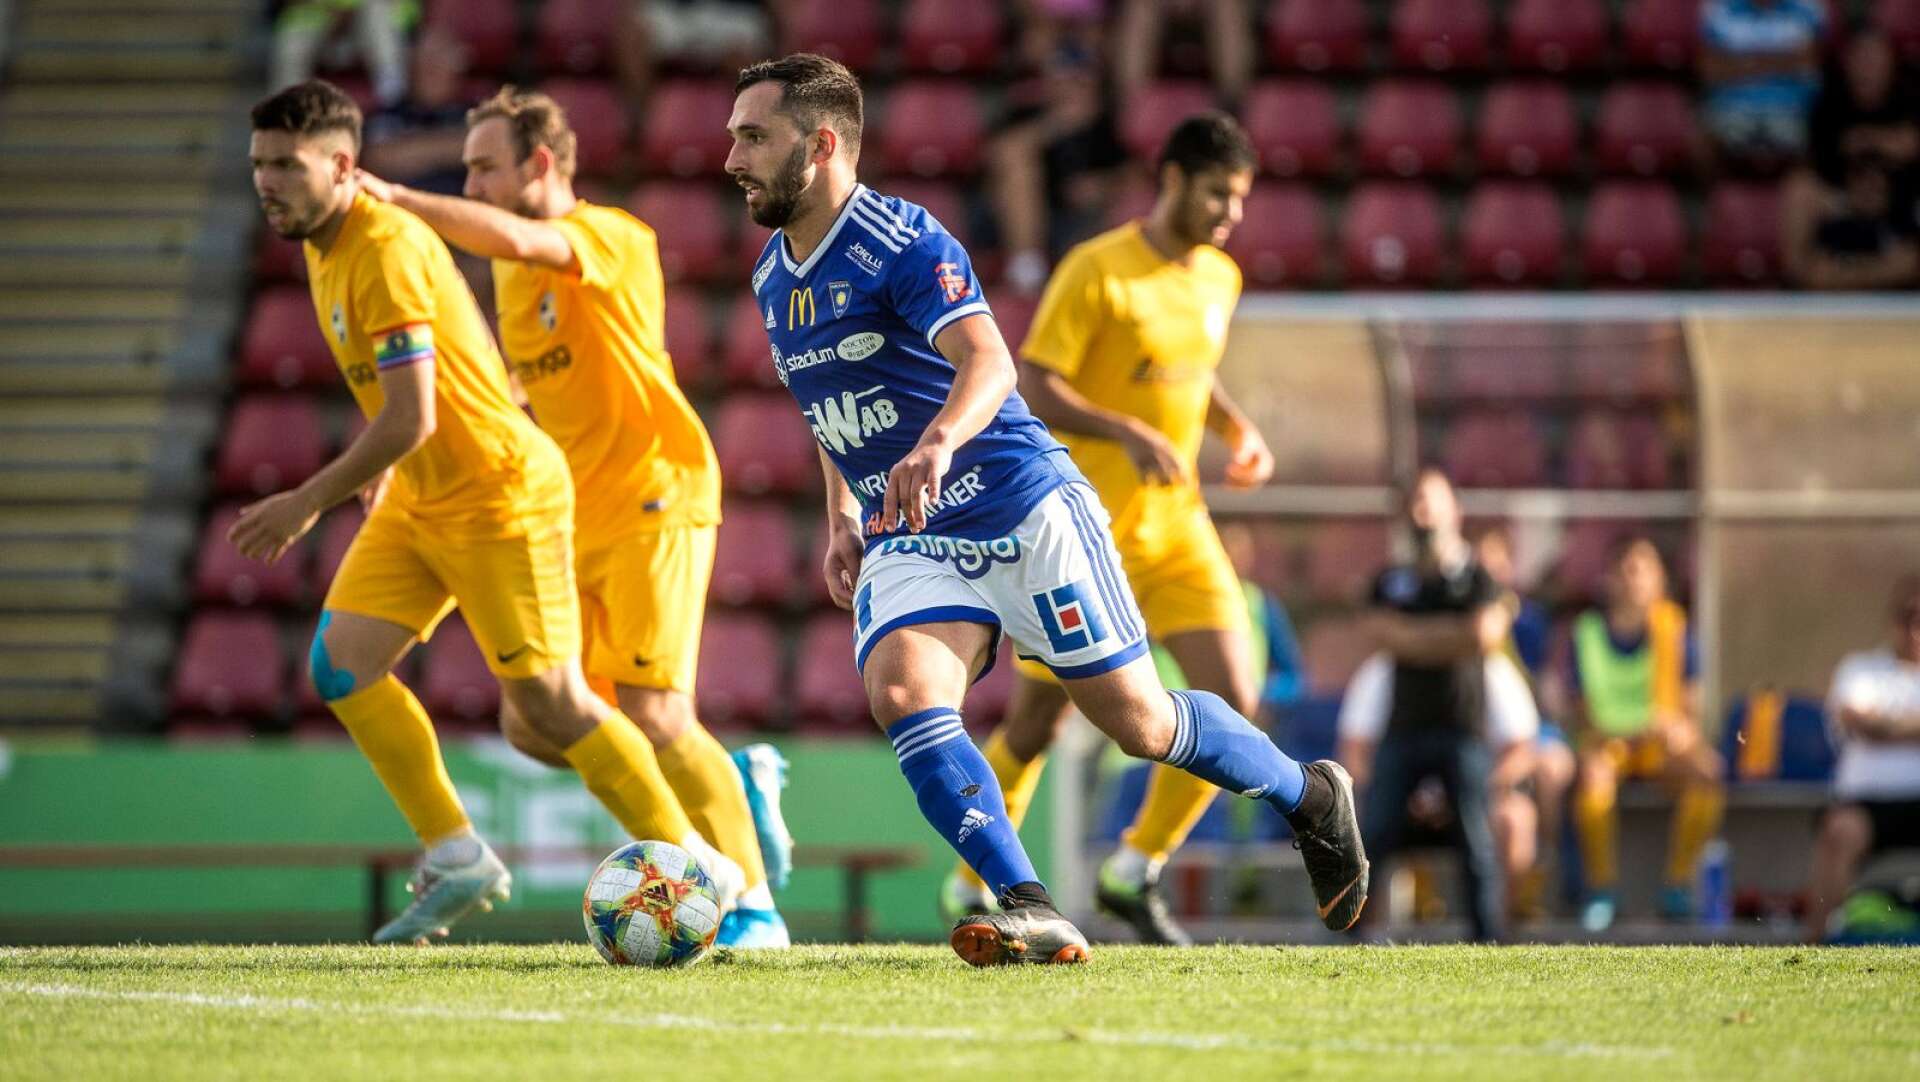 Det nya Karlstadslaget som KBK och Carlstad United bildar i division 1 ser inte ut att få möta gultröjade Linköping nästa säsong. Däremot blir det två långa resor till Norrland om förslaget om spel i division 1 norra klubbas.